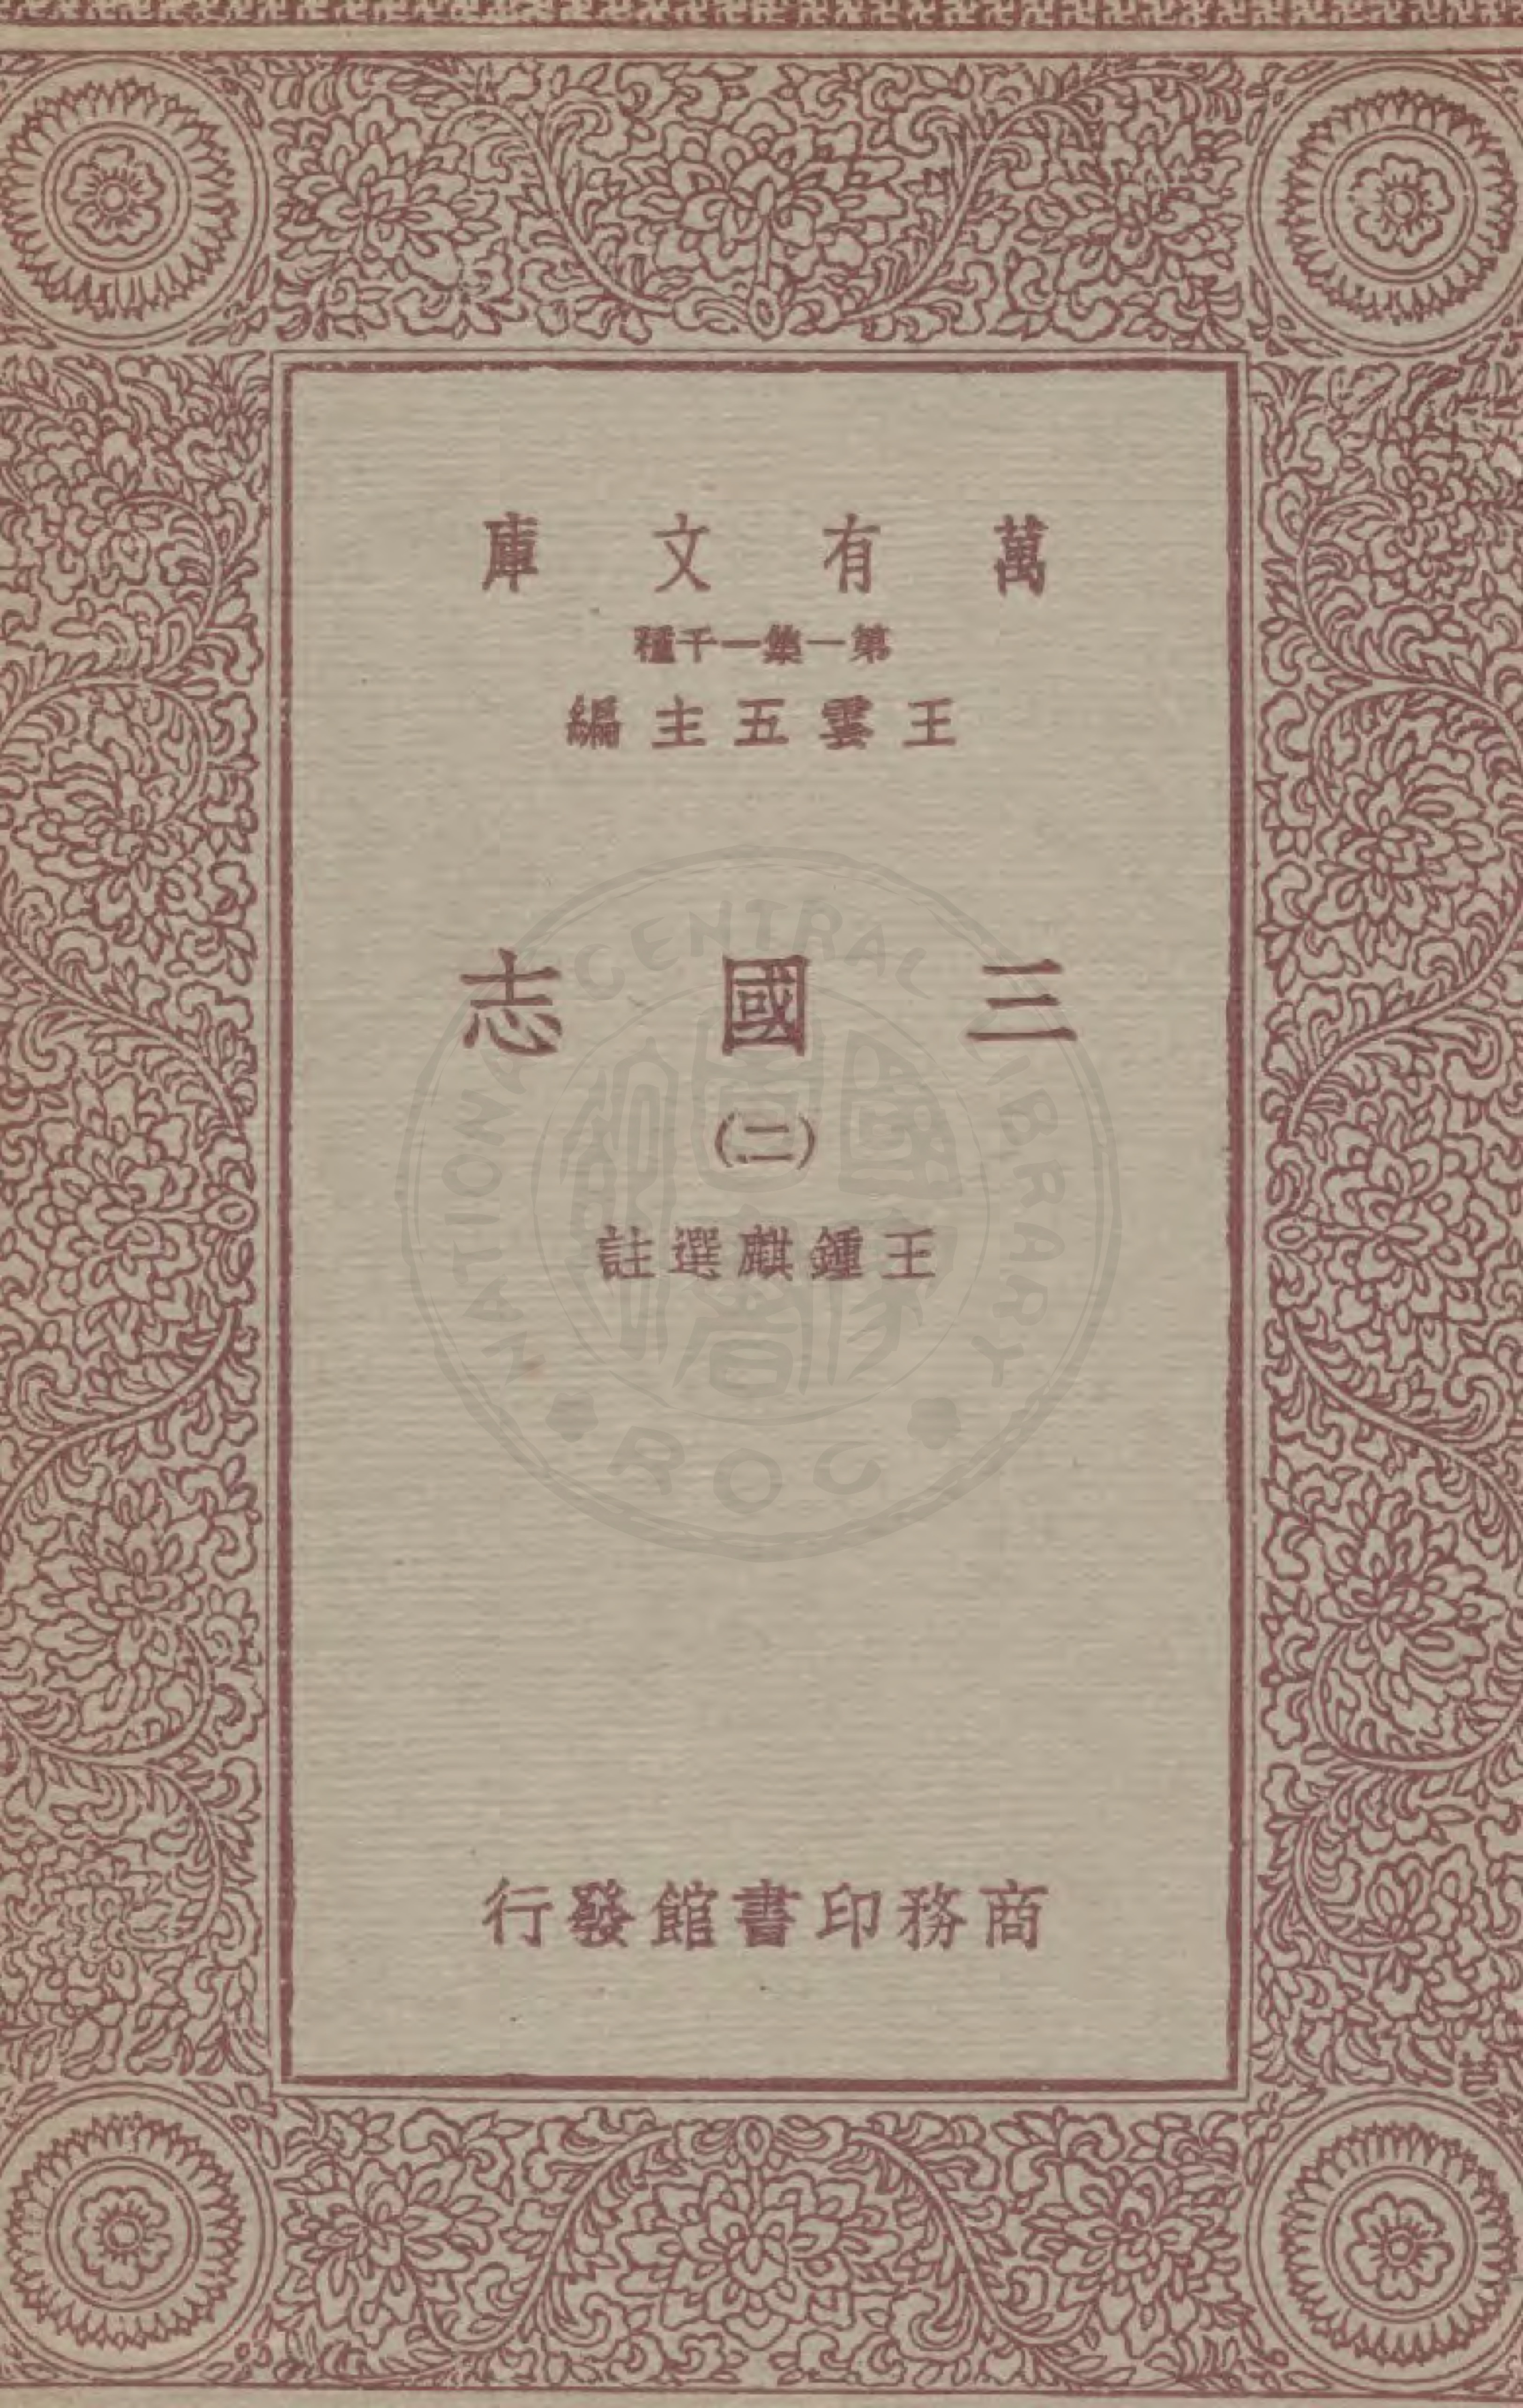 三国志 二册的书籍封面